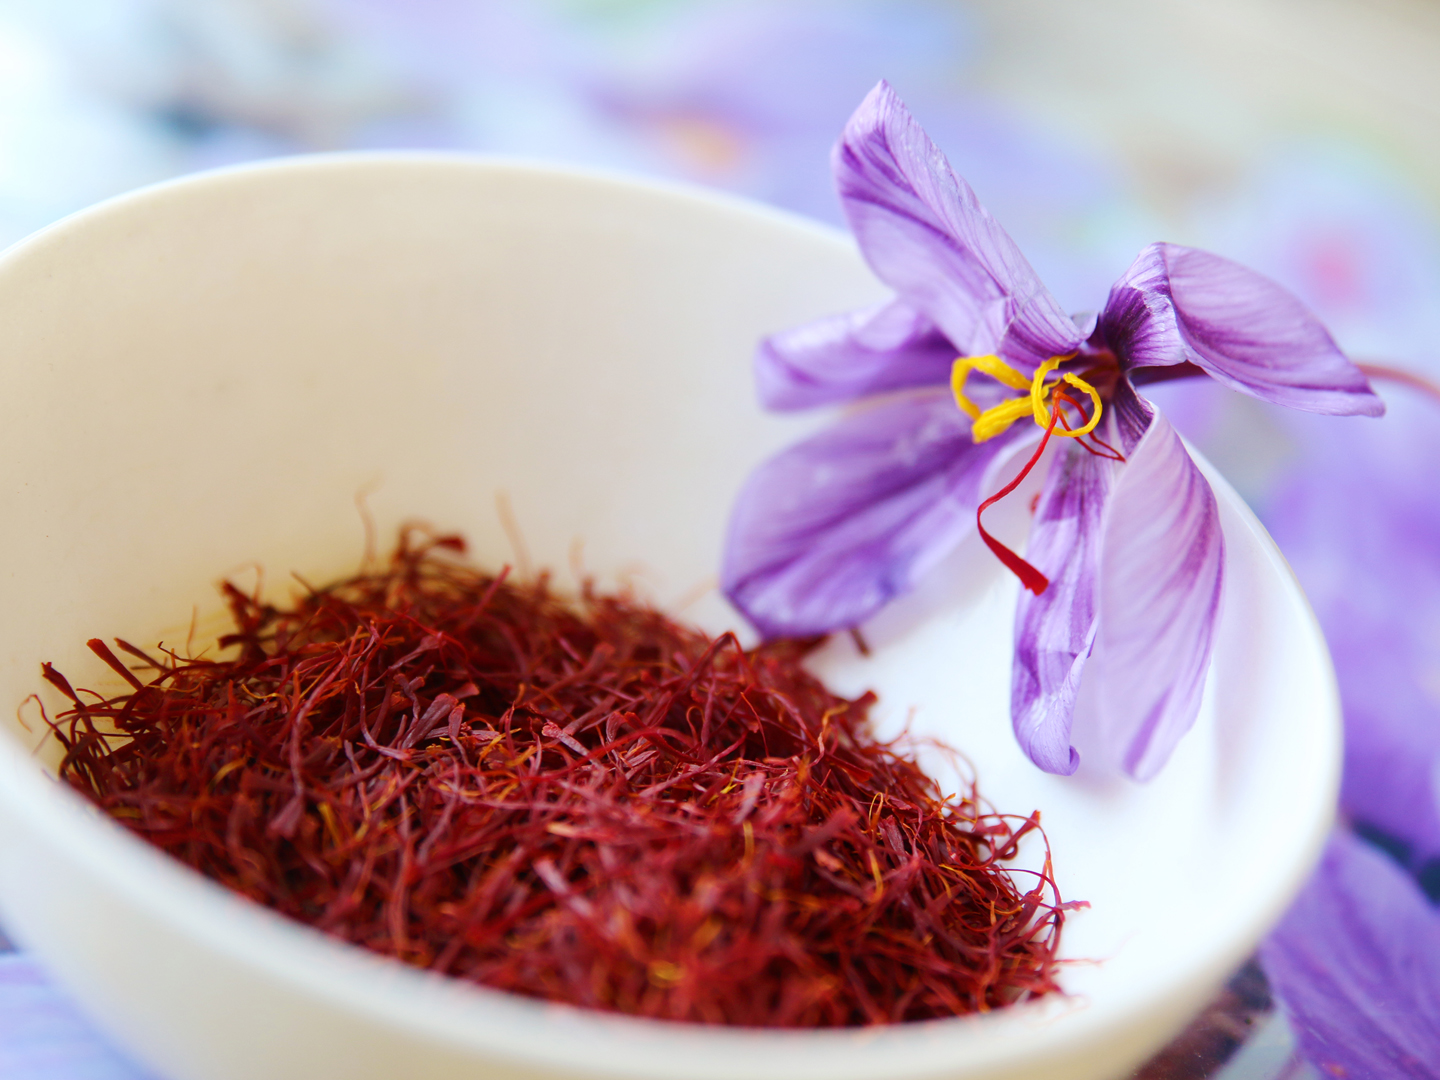 商业藏红花来自藏红花(crocus sativus)的鲜红色柱头，在许多不同的国家，包括希腊、印度、伊朗、阿富汗和西班牙，藏红花在秋天开花。